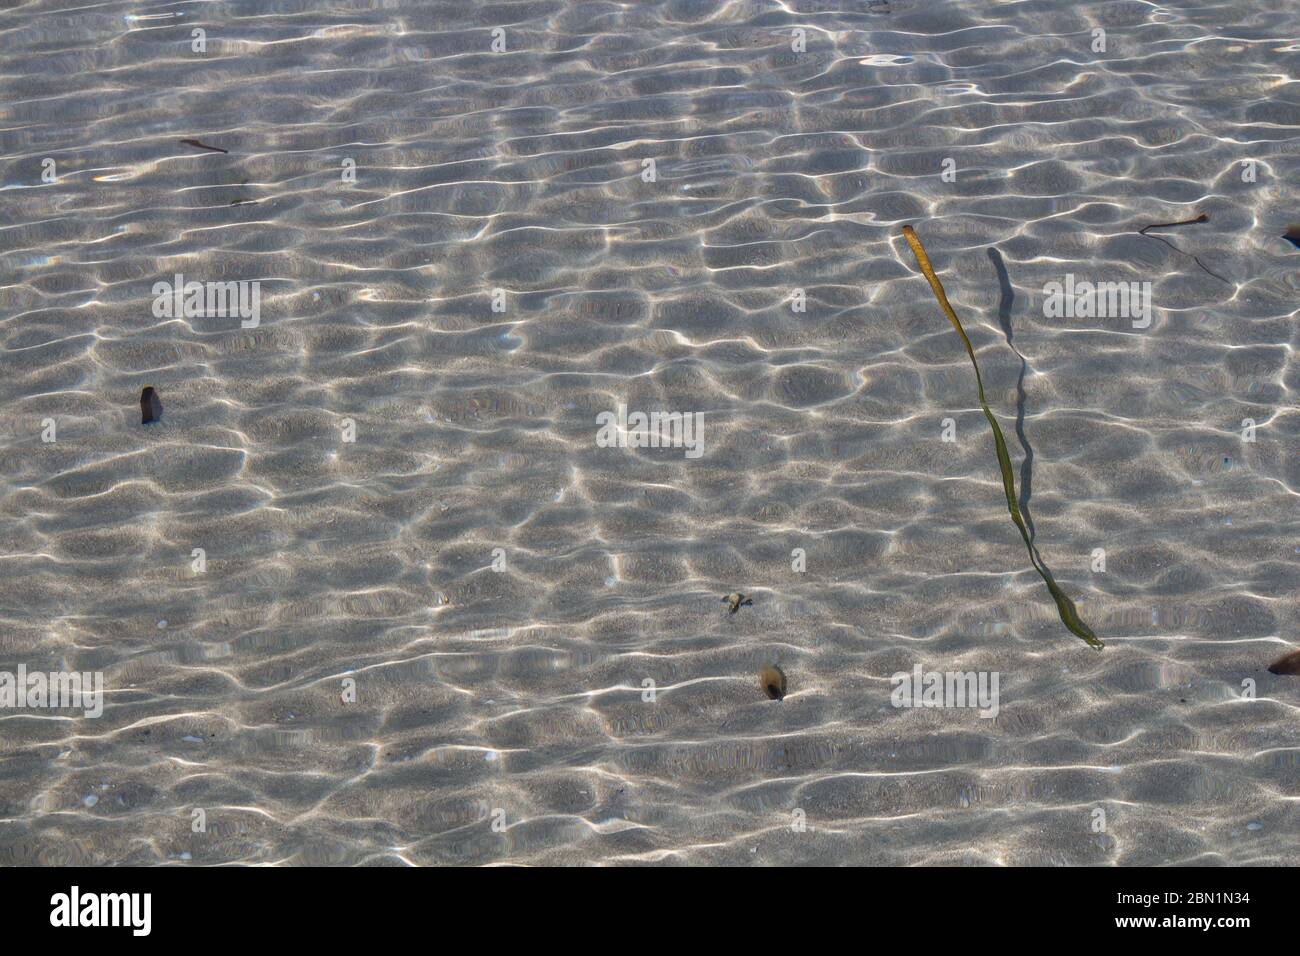 Pulire una chiara acqua poco profonda della spiaggia della città con un fondo sabbioso. Struttura di piccole onde e luce del sole. Alghe nell'acqua. Alghero, Sardegna, IT Foto Stock